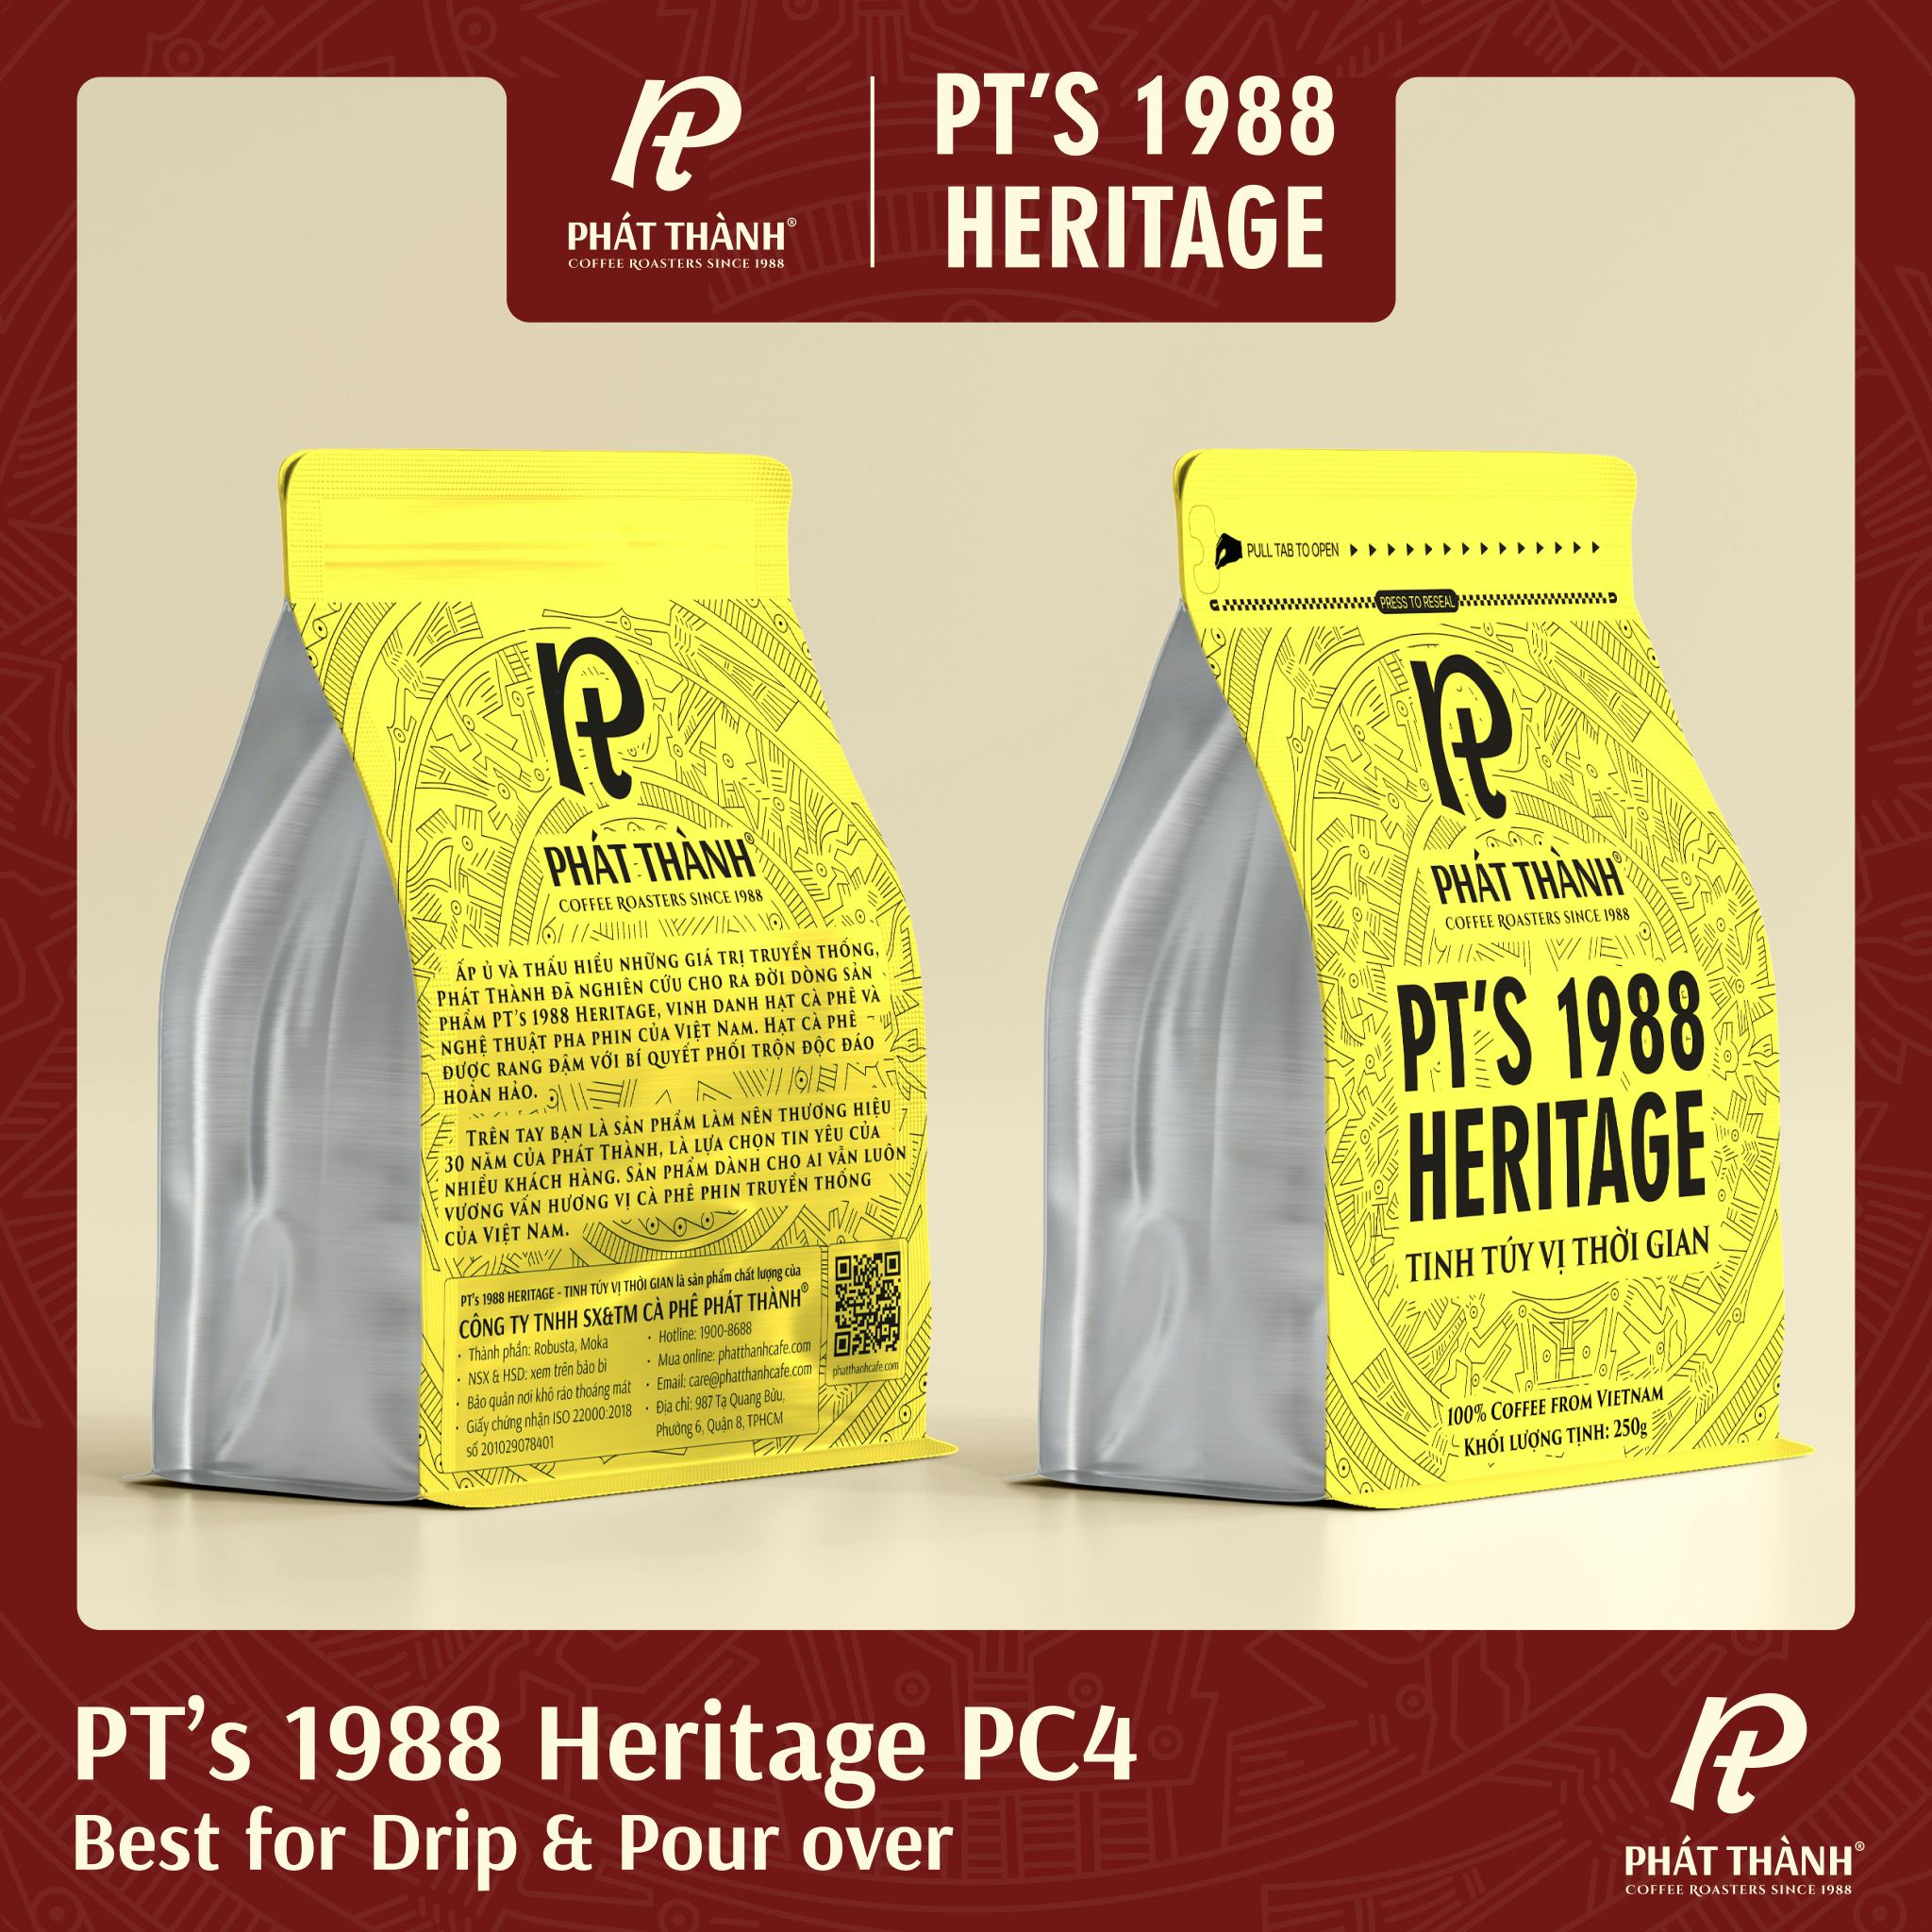 PT's 1988 Heritage PC4